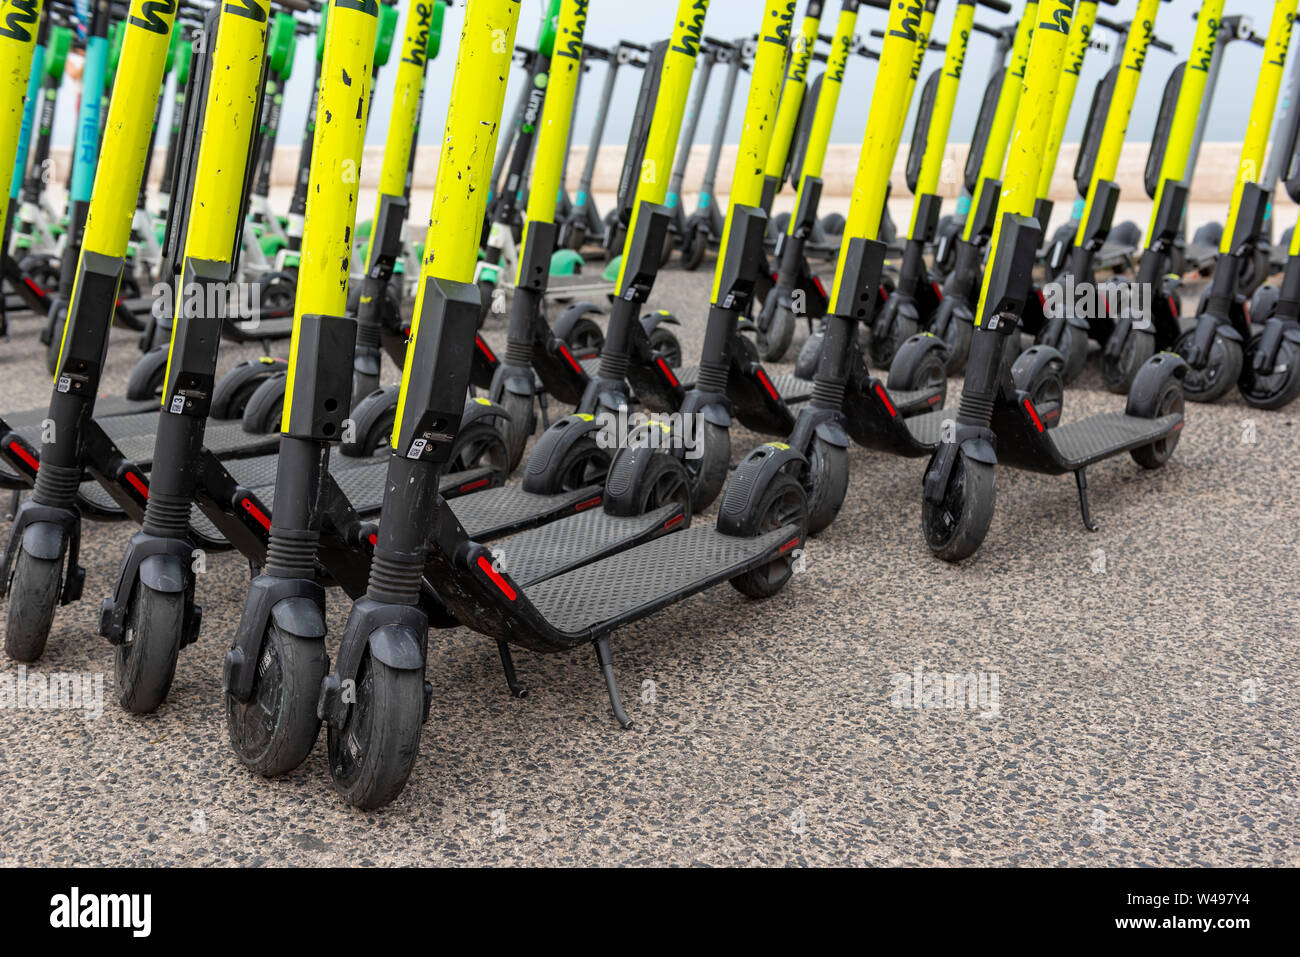 E-scooters en Lisboa, alquiler de scooters eléctricos autoservicio invaden las calles y aceras con más de 90 puntos de conexión en Lisboa, Portugal. Foto de stock